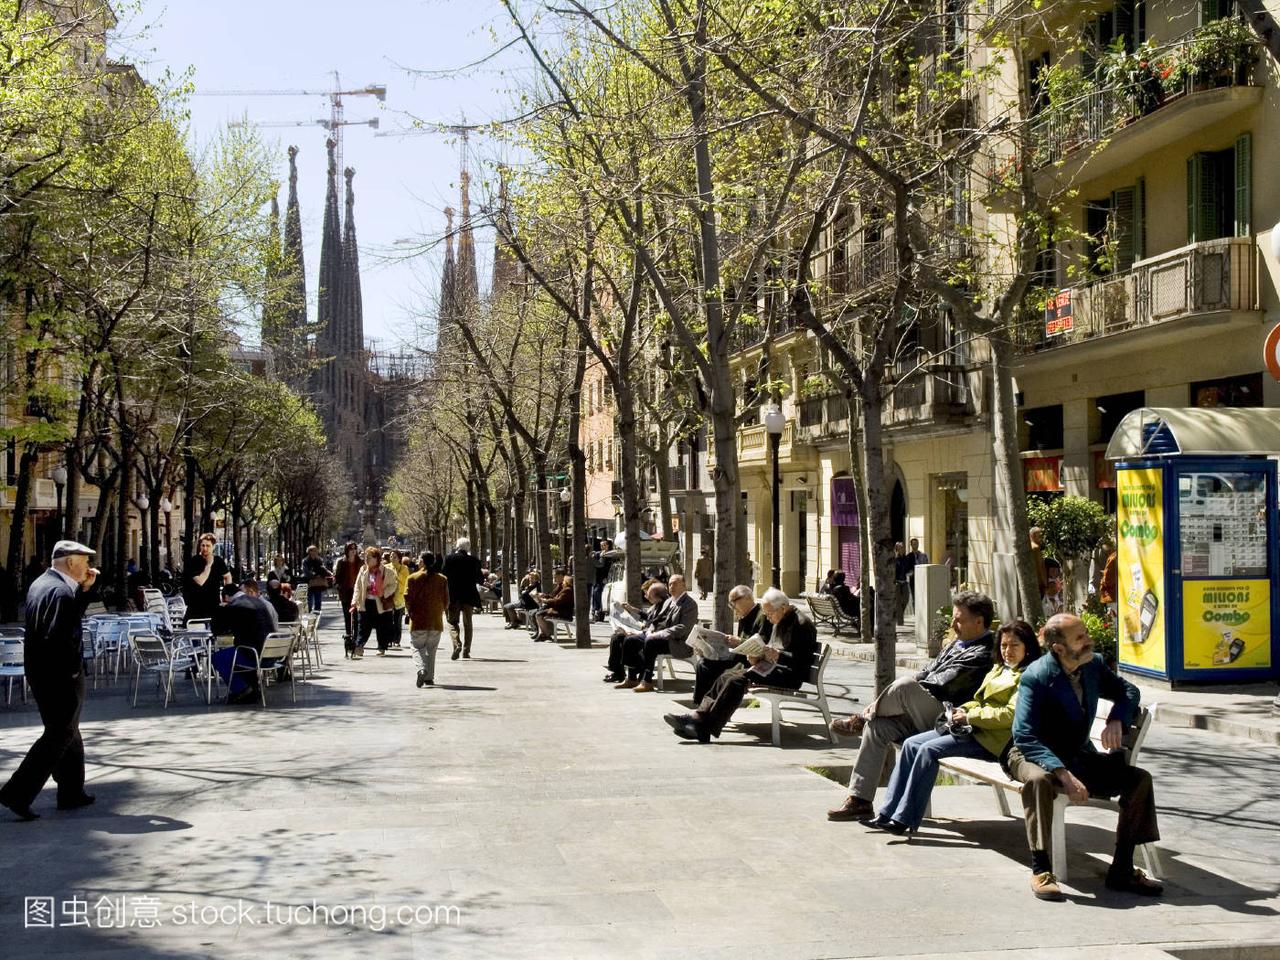 西班牙,Spain,步行街,pedestrian zone,长凳,Ben